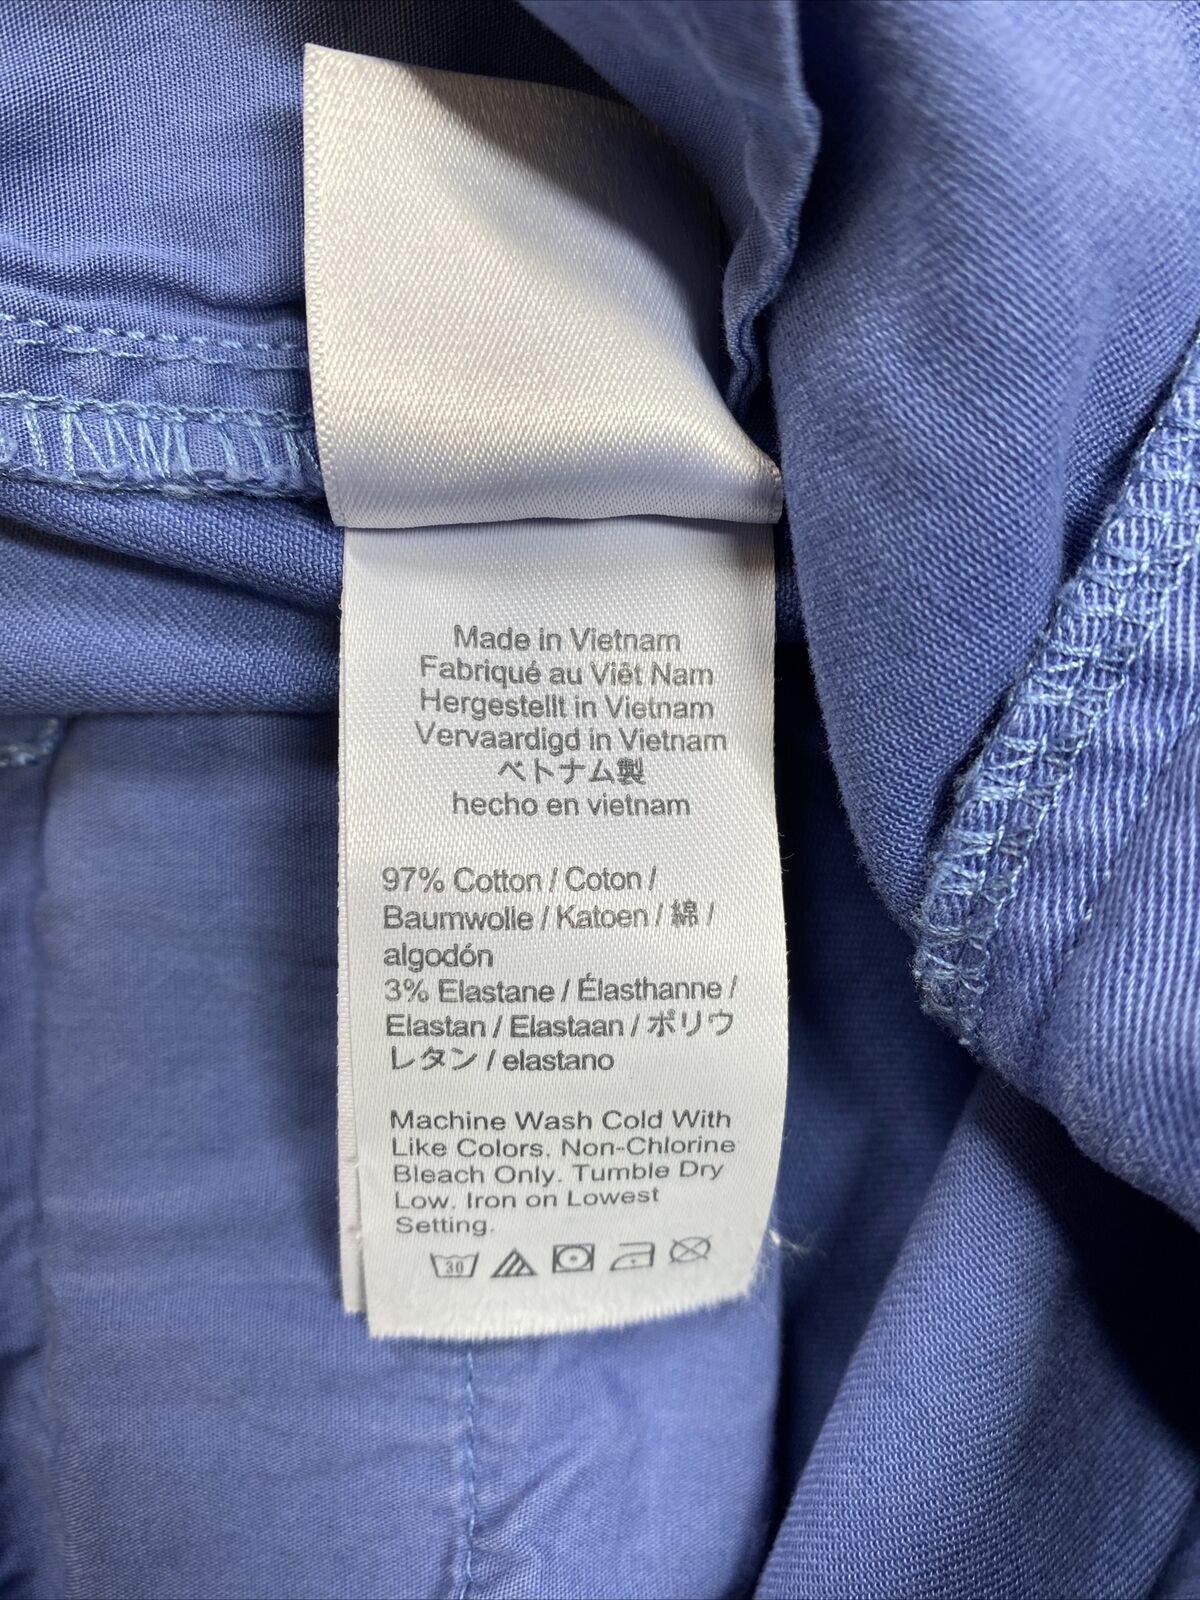 J.Crew Pantalones cortos chinos de algodón azul para mujer - 4